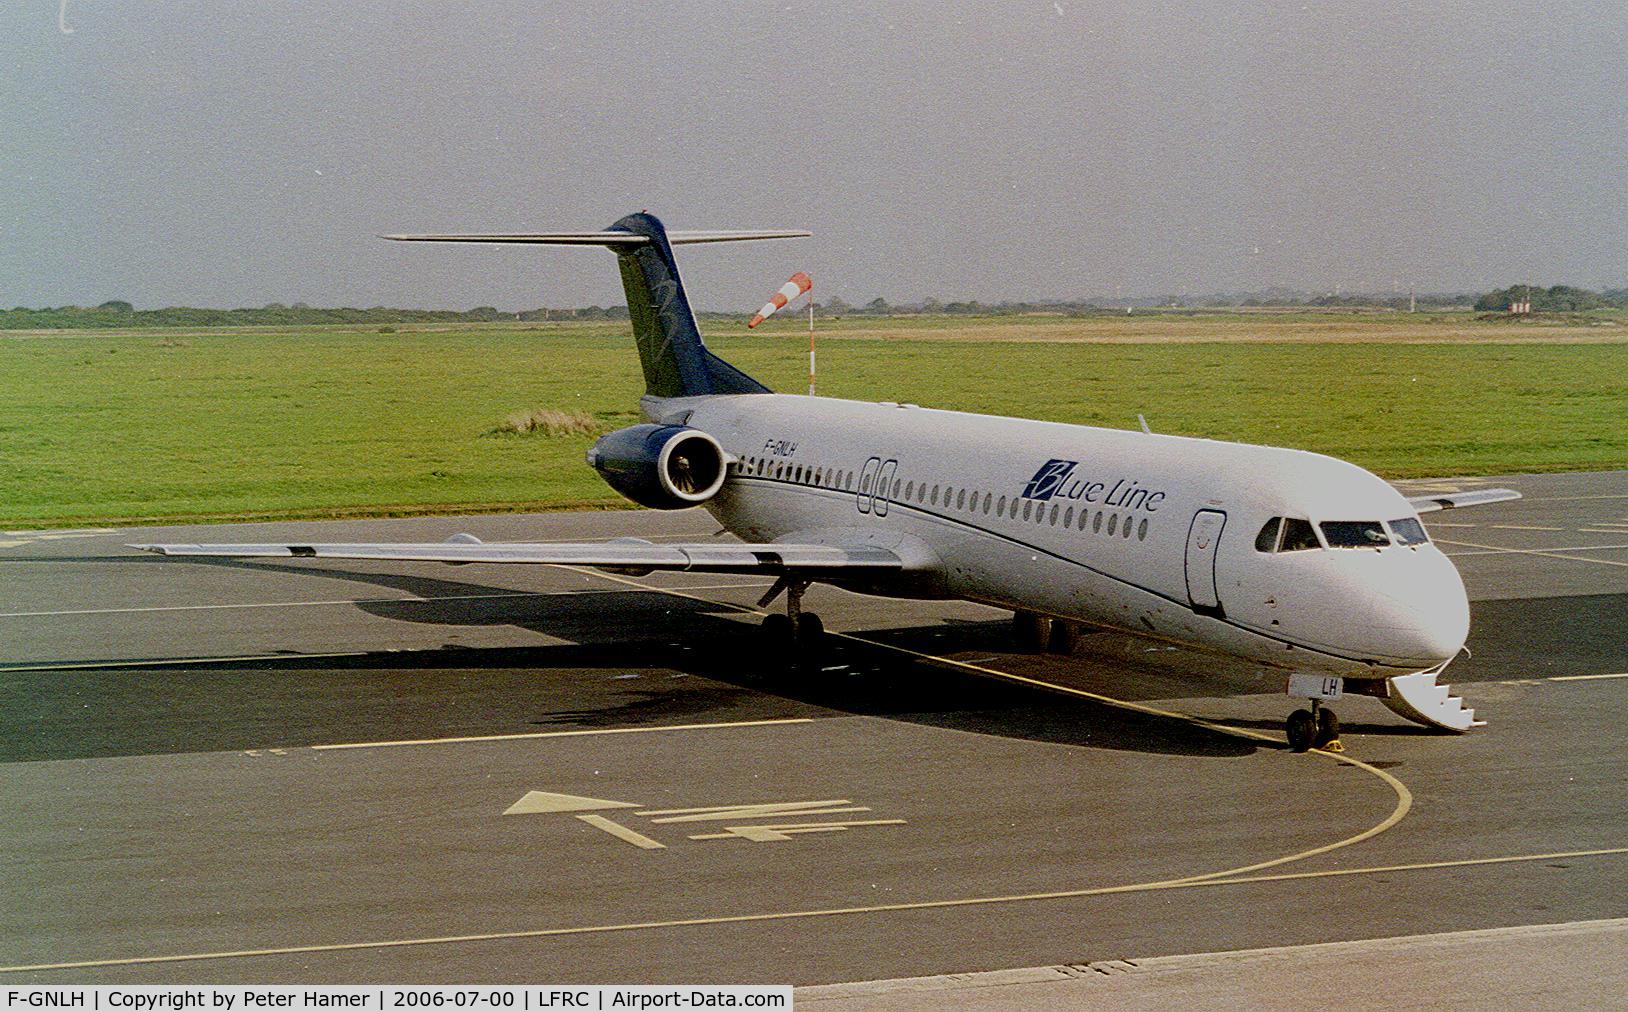 F-GNLH, 1991 Fokker 100 (F-28-0100) C/N 11311, Maupertus